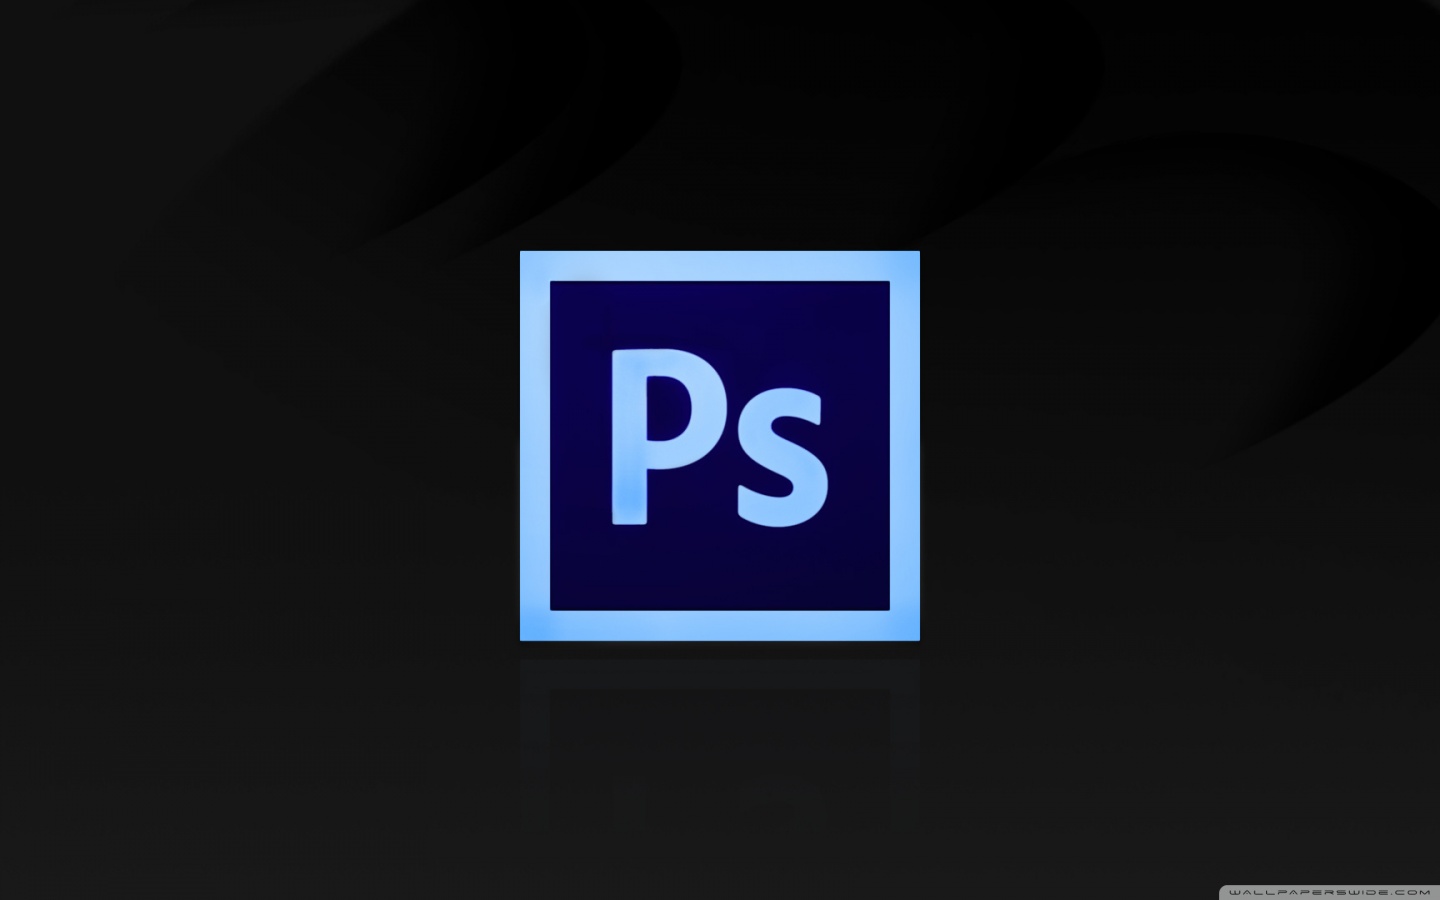 Adobe photoshop - Free logo icons